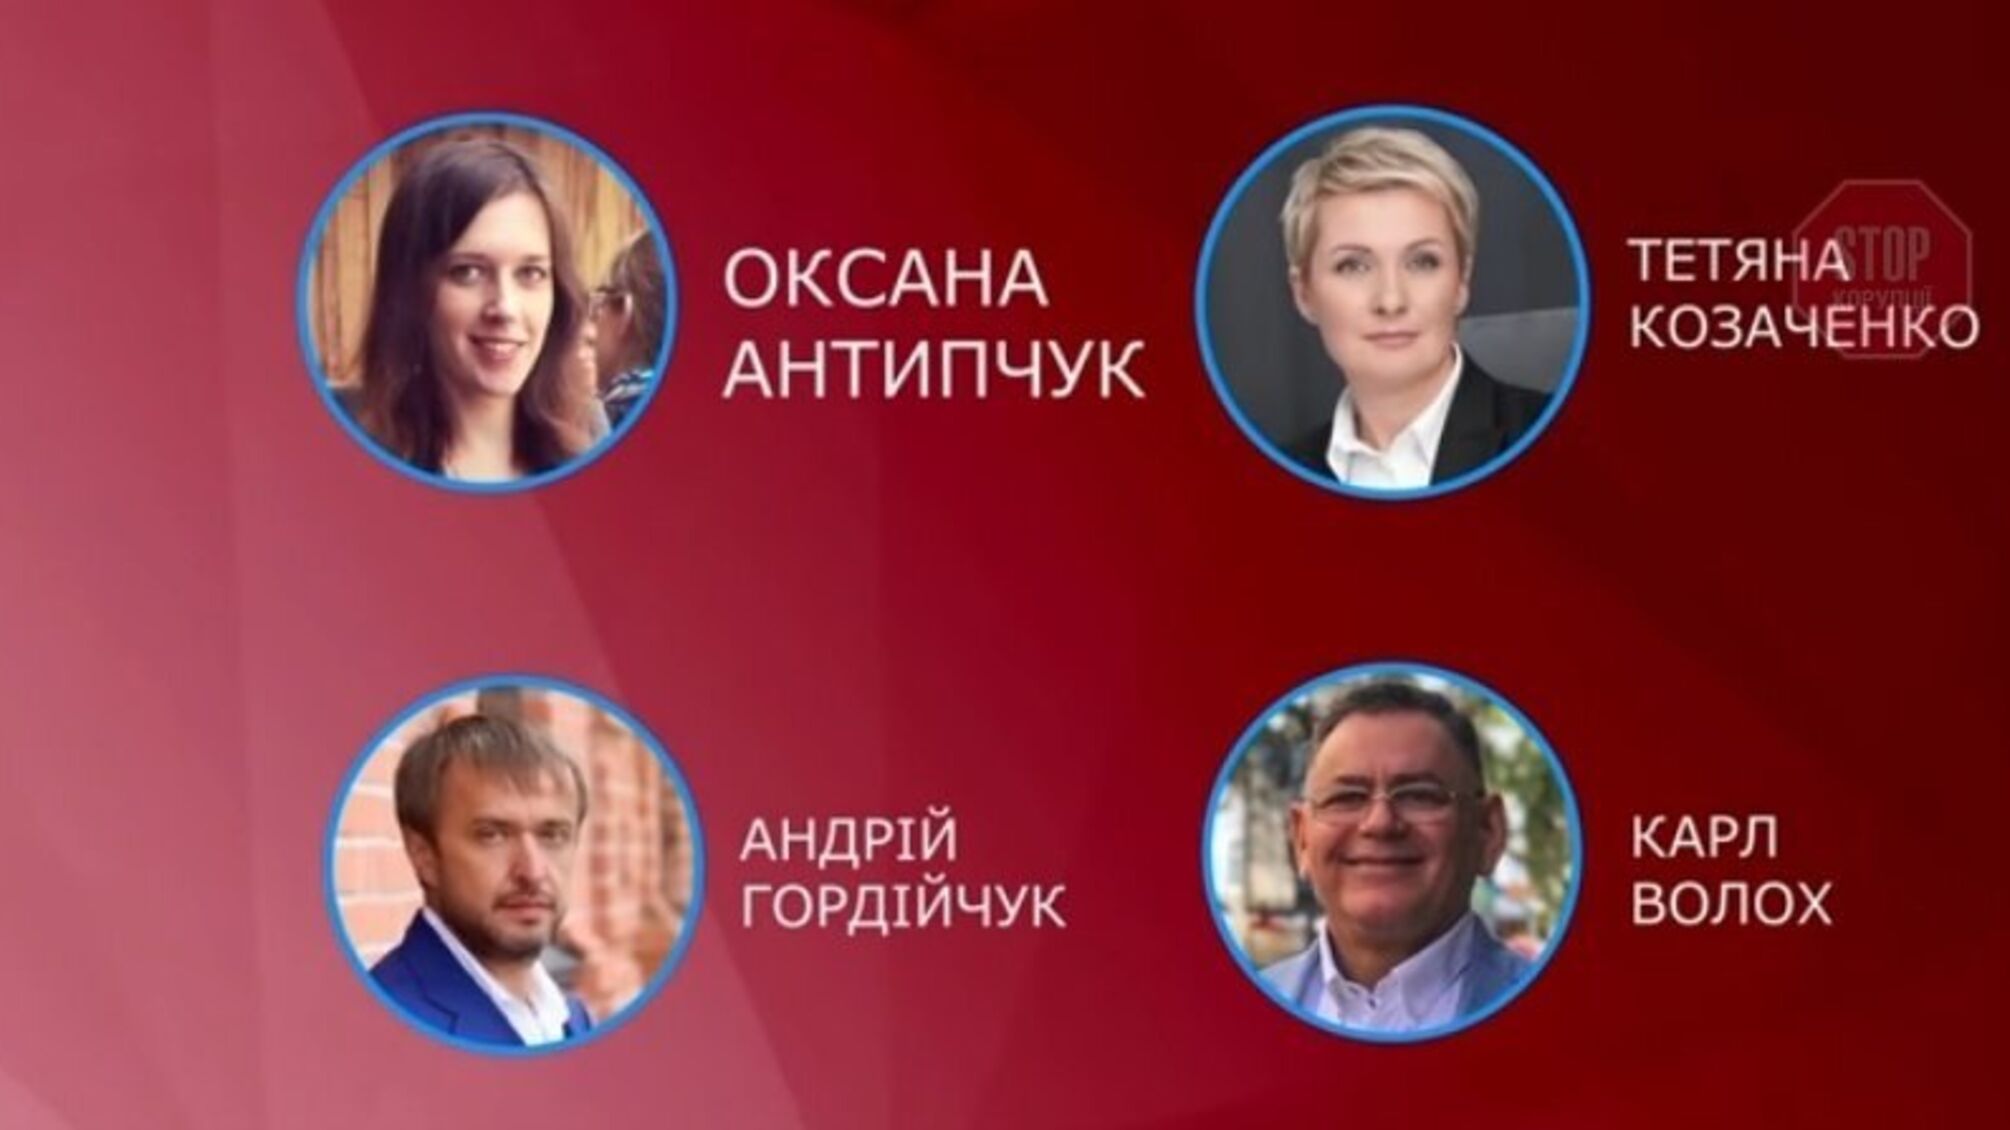 Гордійчуків вузол: хто 'прикриває' заплутані корупційні схеми депутата-боржника